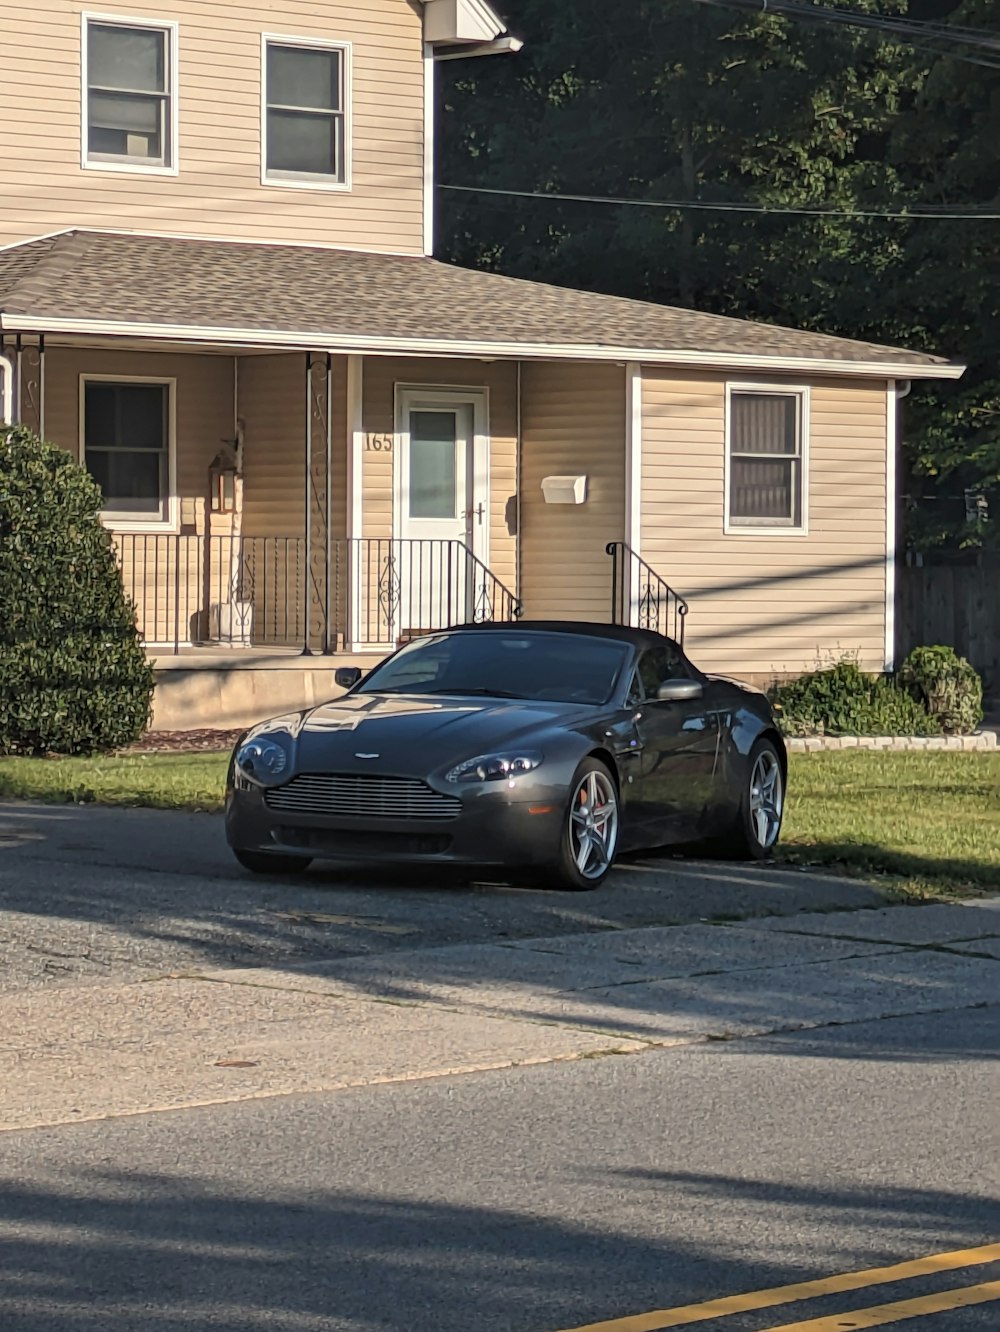 Ein schwarzer Sportwagen parkt vor einem Haus